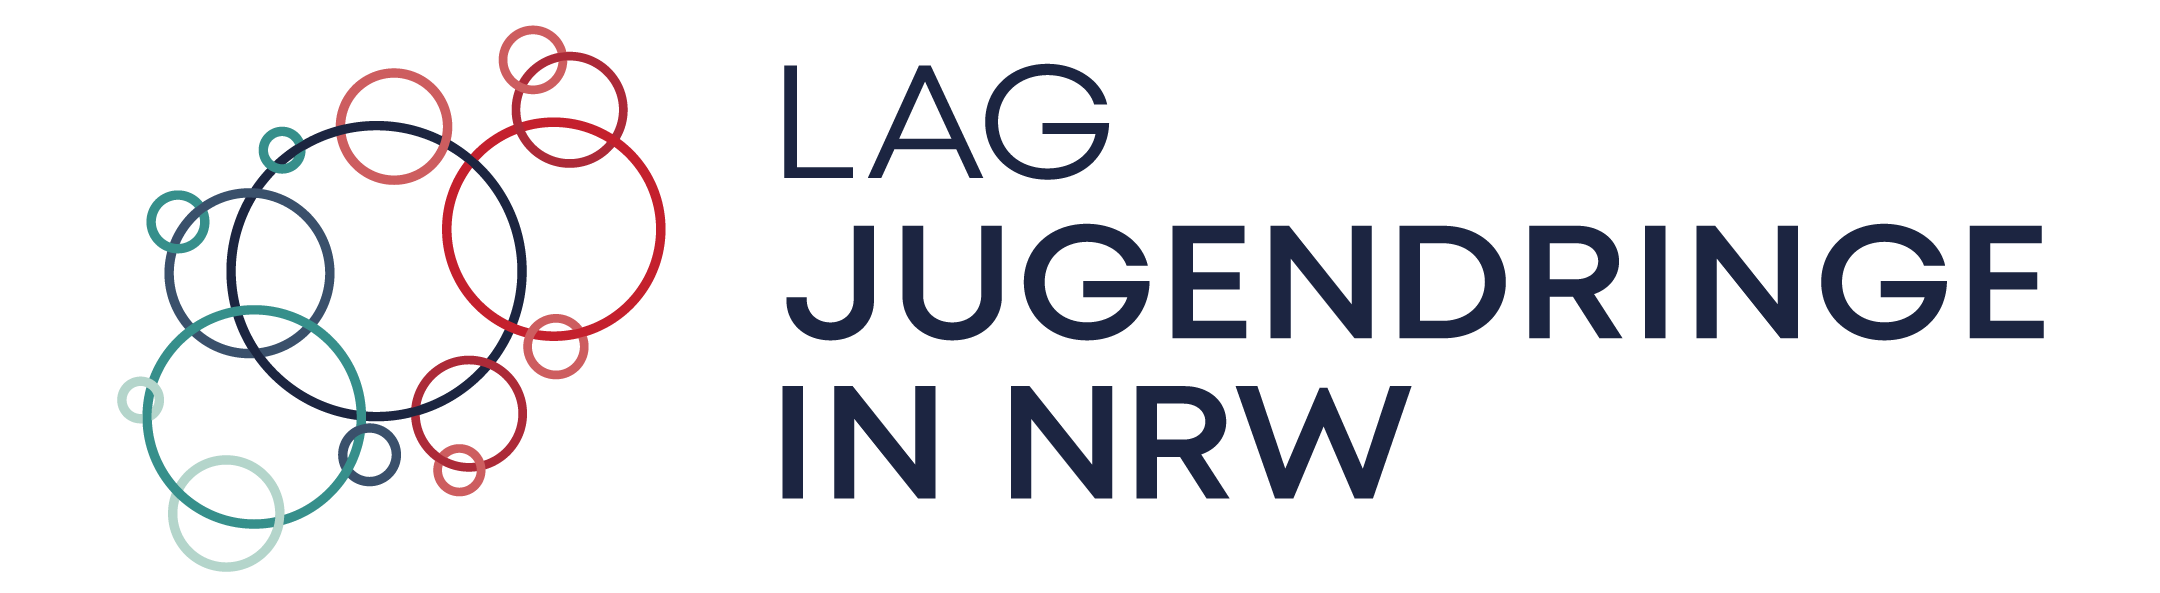 LAG Jugendringe NRW